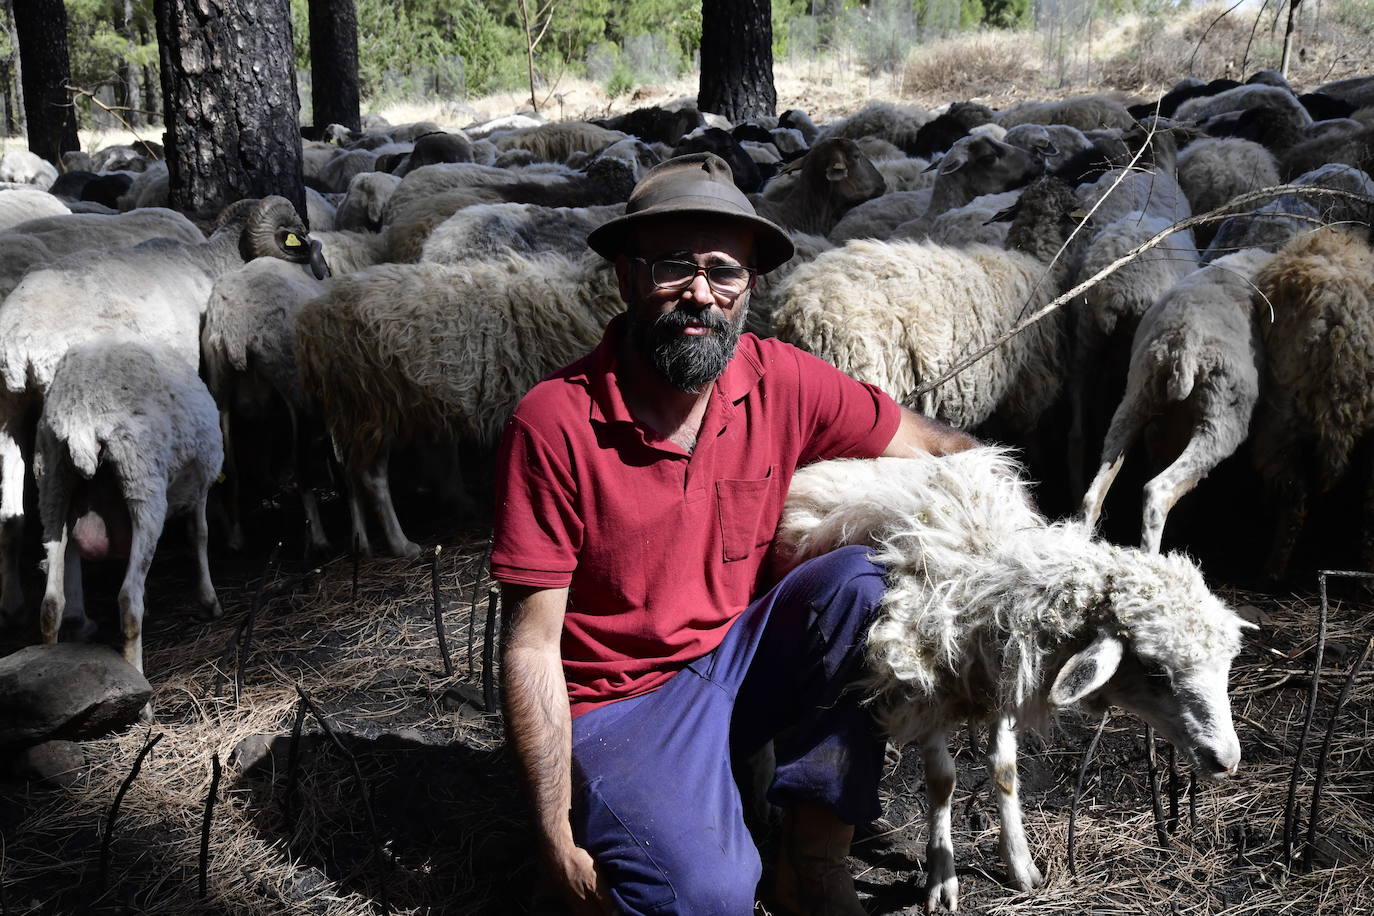 Ruymán Mena posa junto a su ganado en la zona del Cortijo de Huertas.